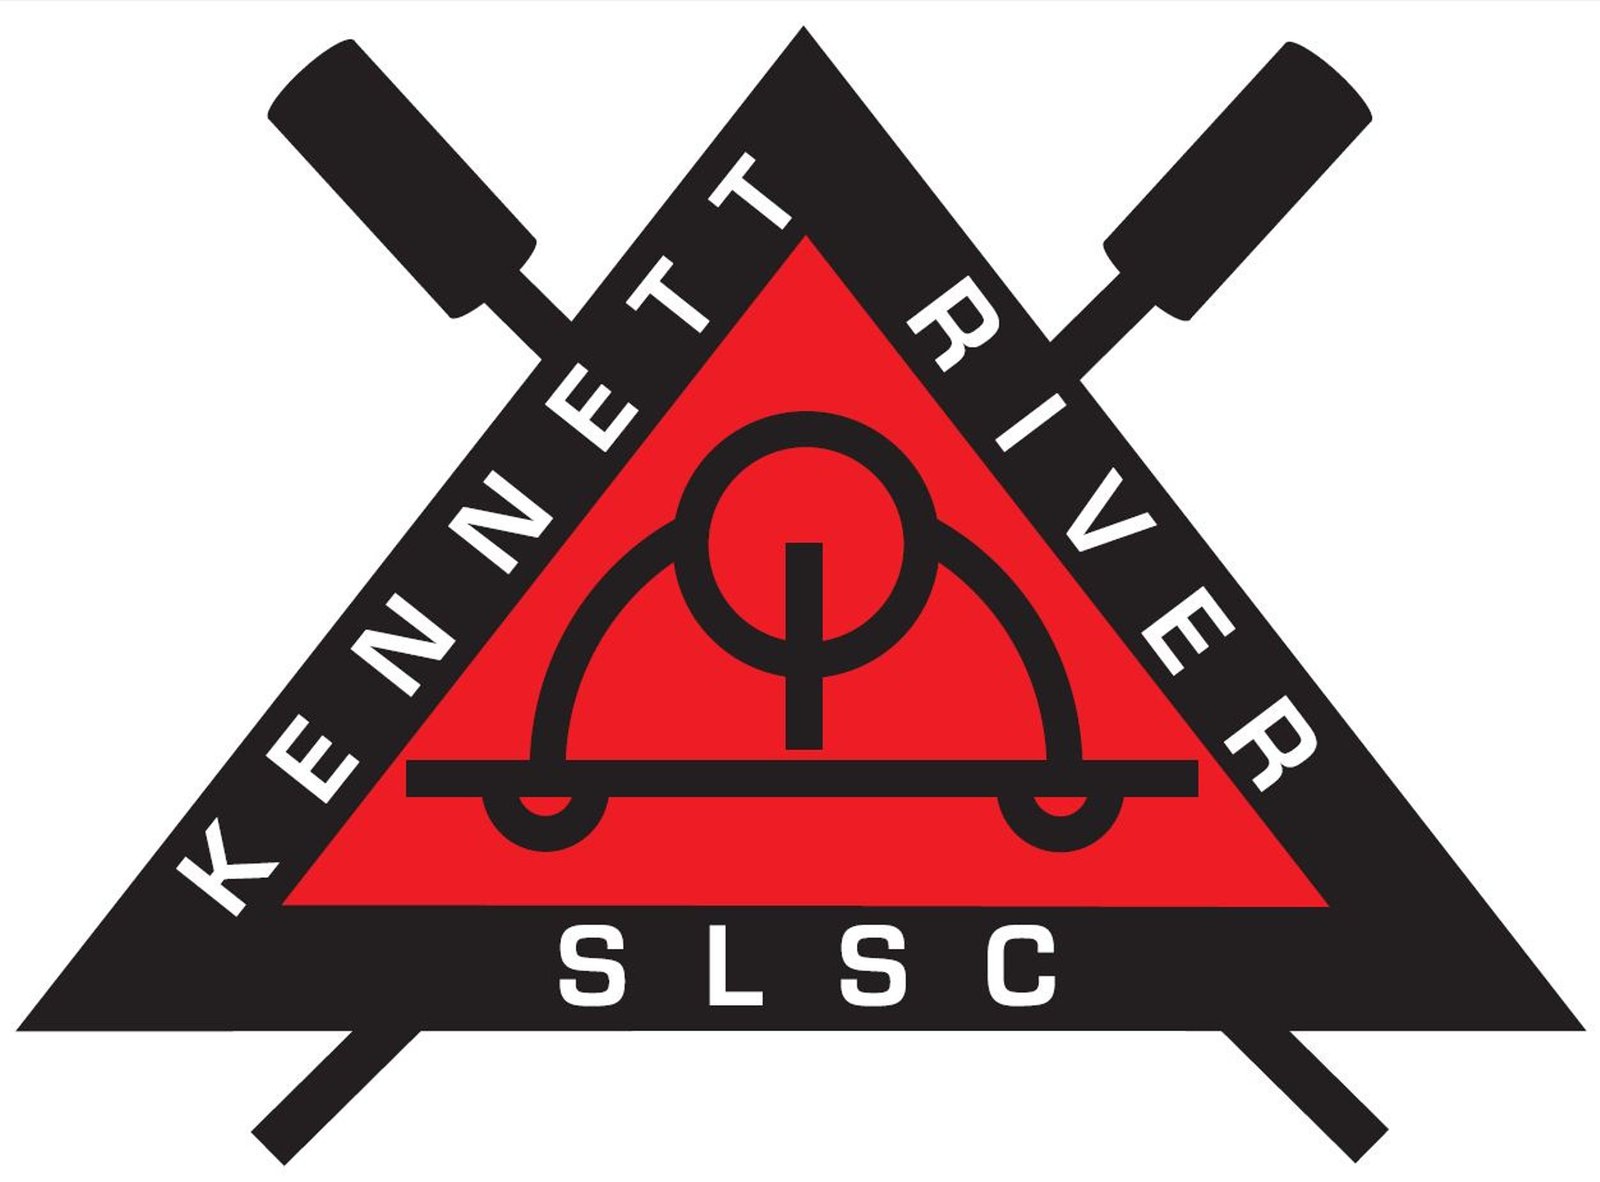 Kennett River SLSC